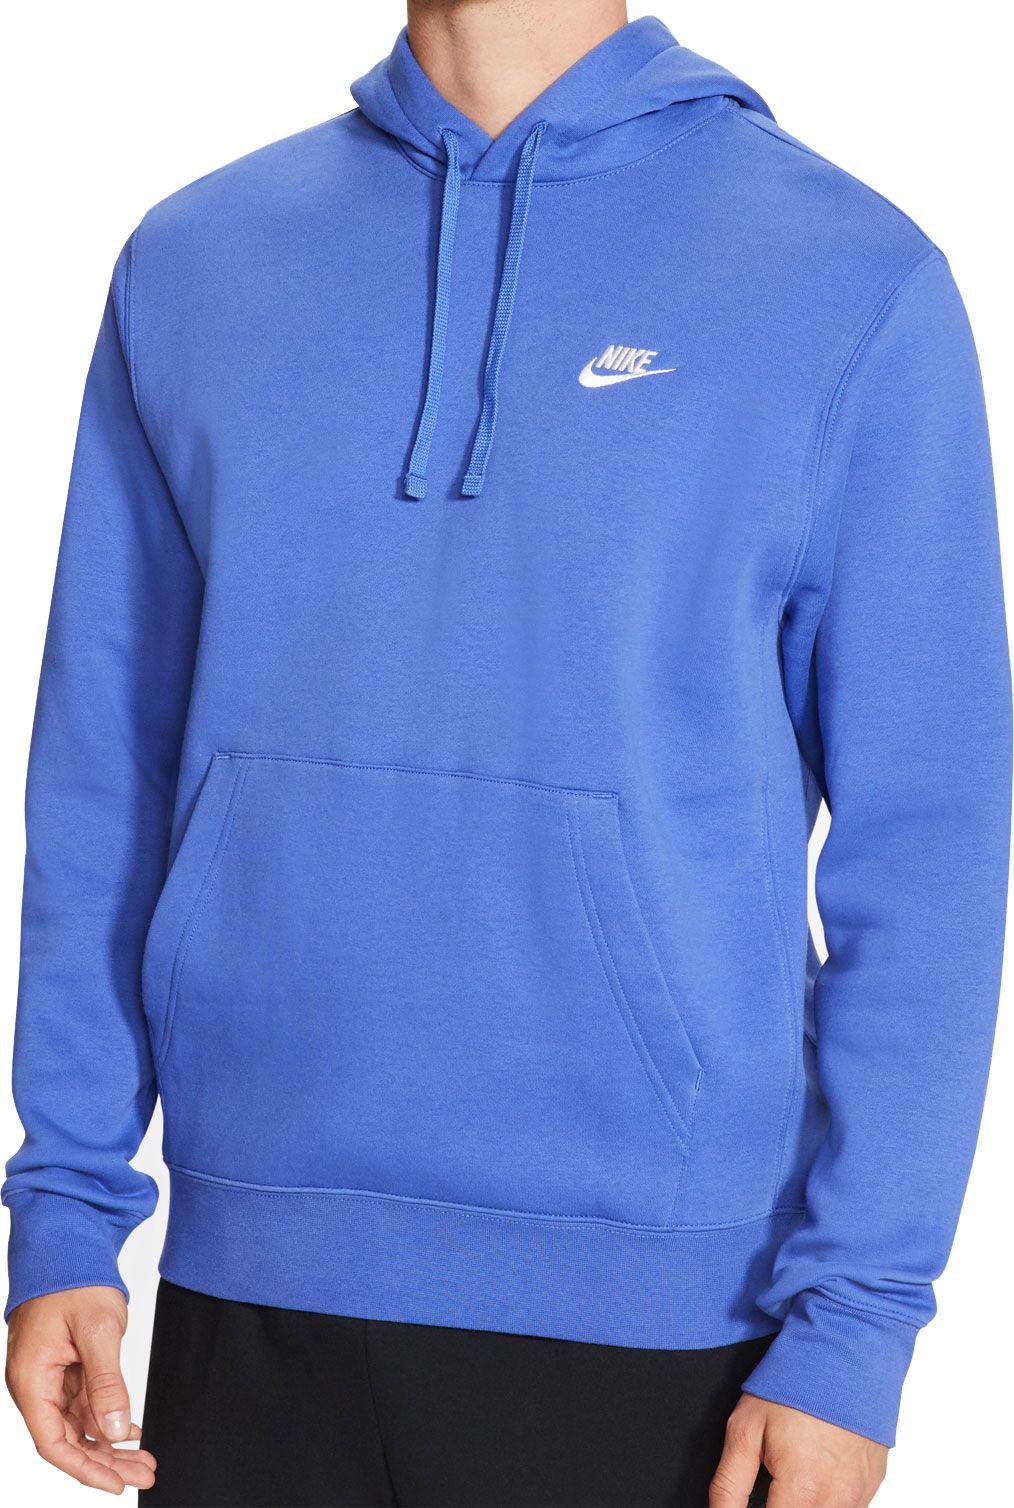 baby blue nike hoodie